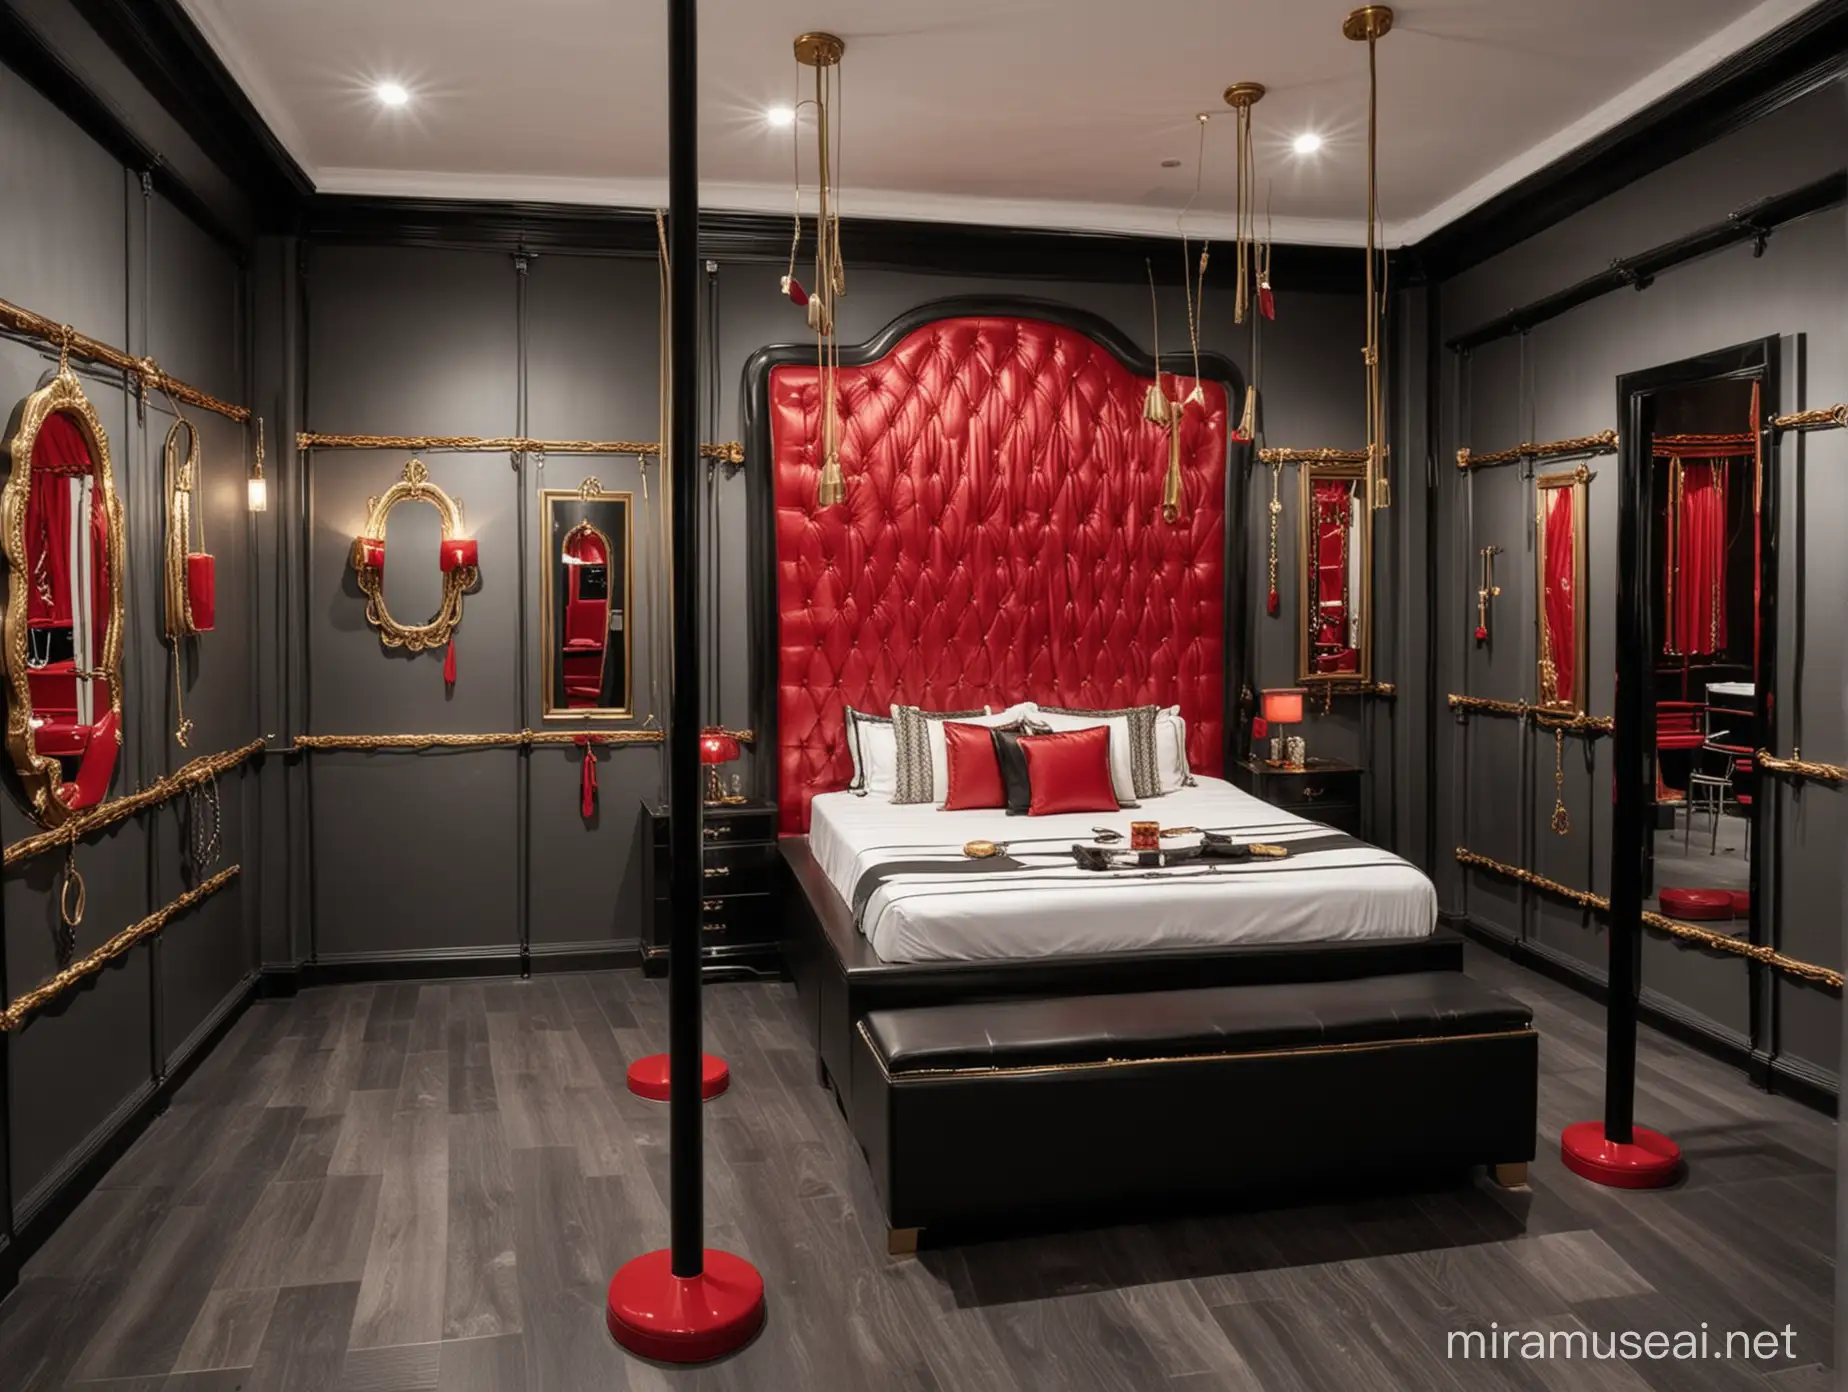 Una habitación de castigo sexual moderna, con vitrinas que contengan todo tipo de juguetes sexuales y látigos, con una cama para castigos sexuales, con las paredes blanco y negro, con detalles en rojo y dorado